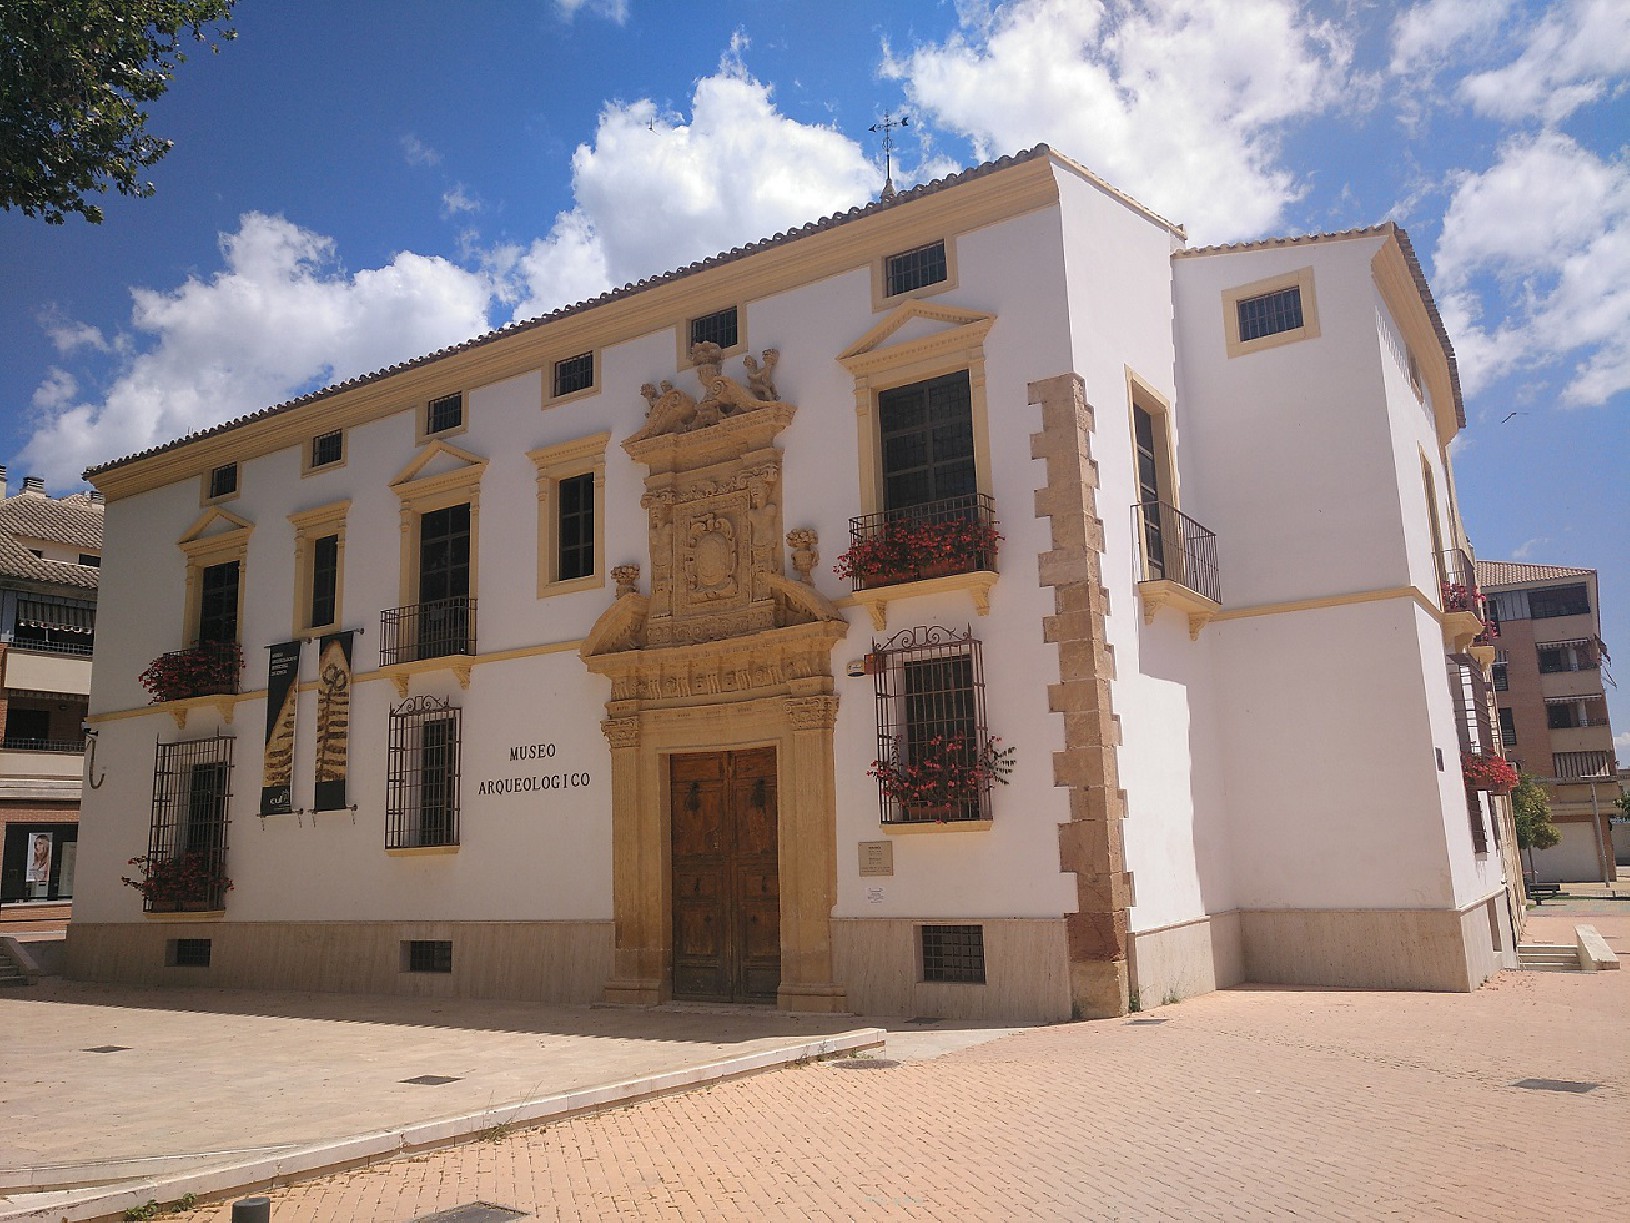 Apertura museo arqueológico